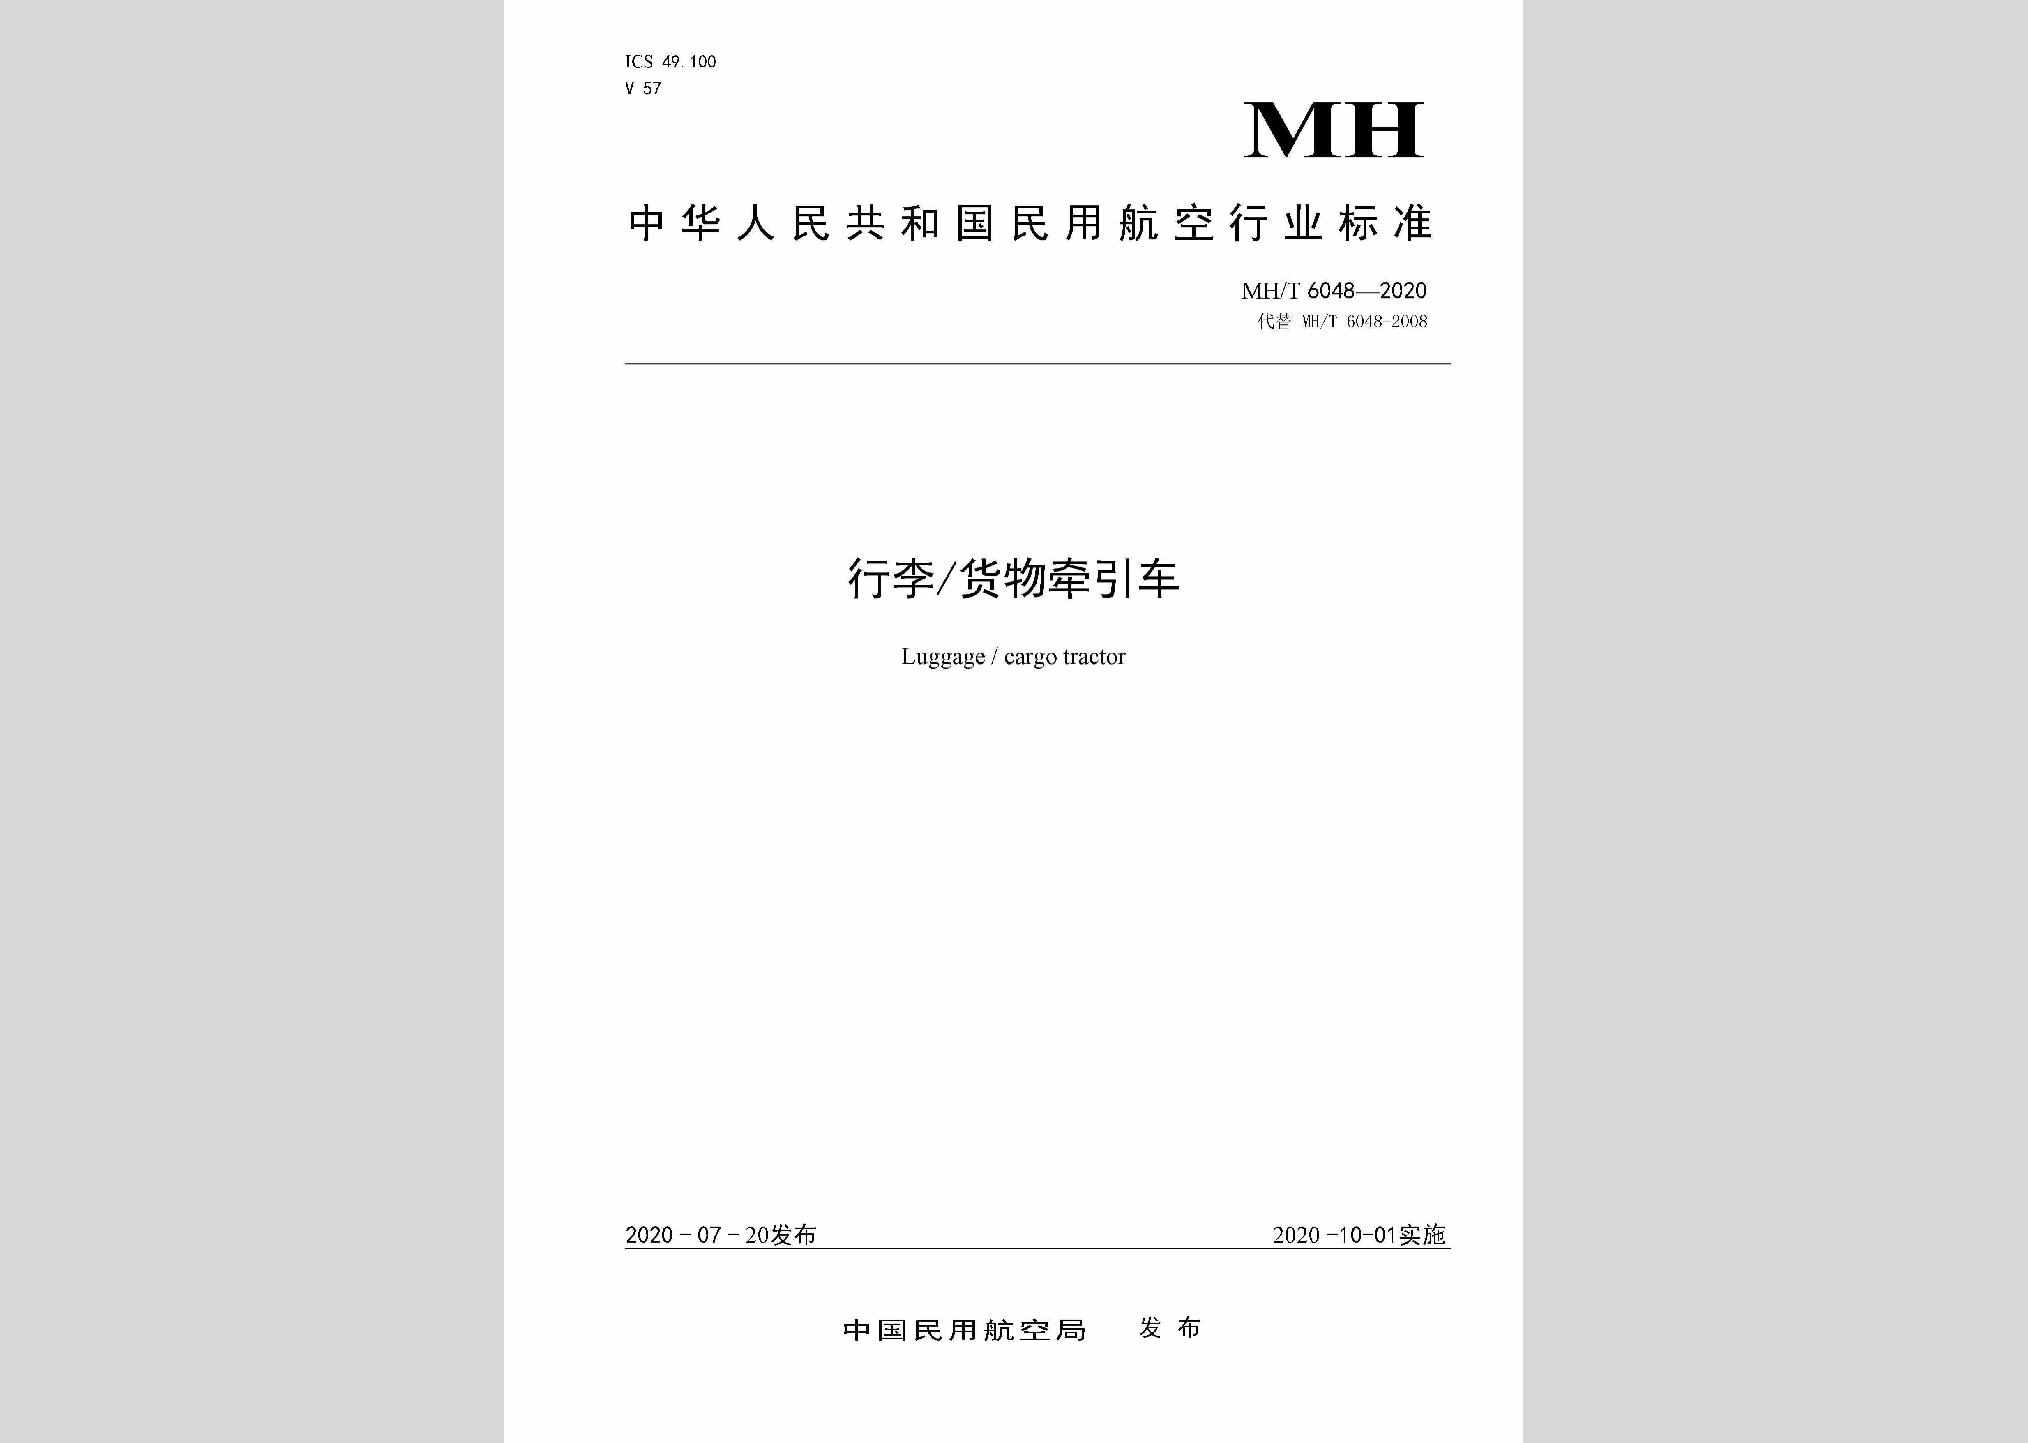 MH/T6048-2020：行李/货物牵引车